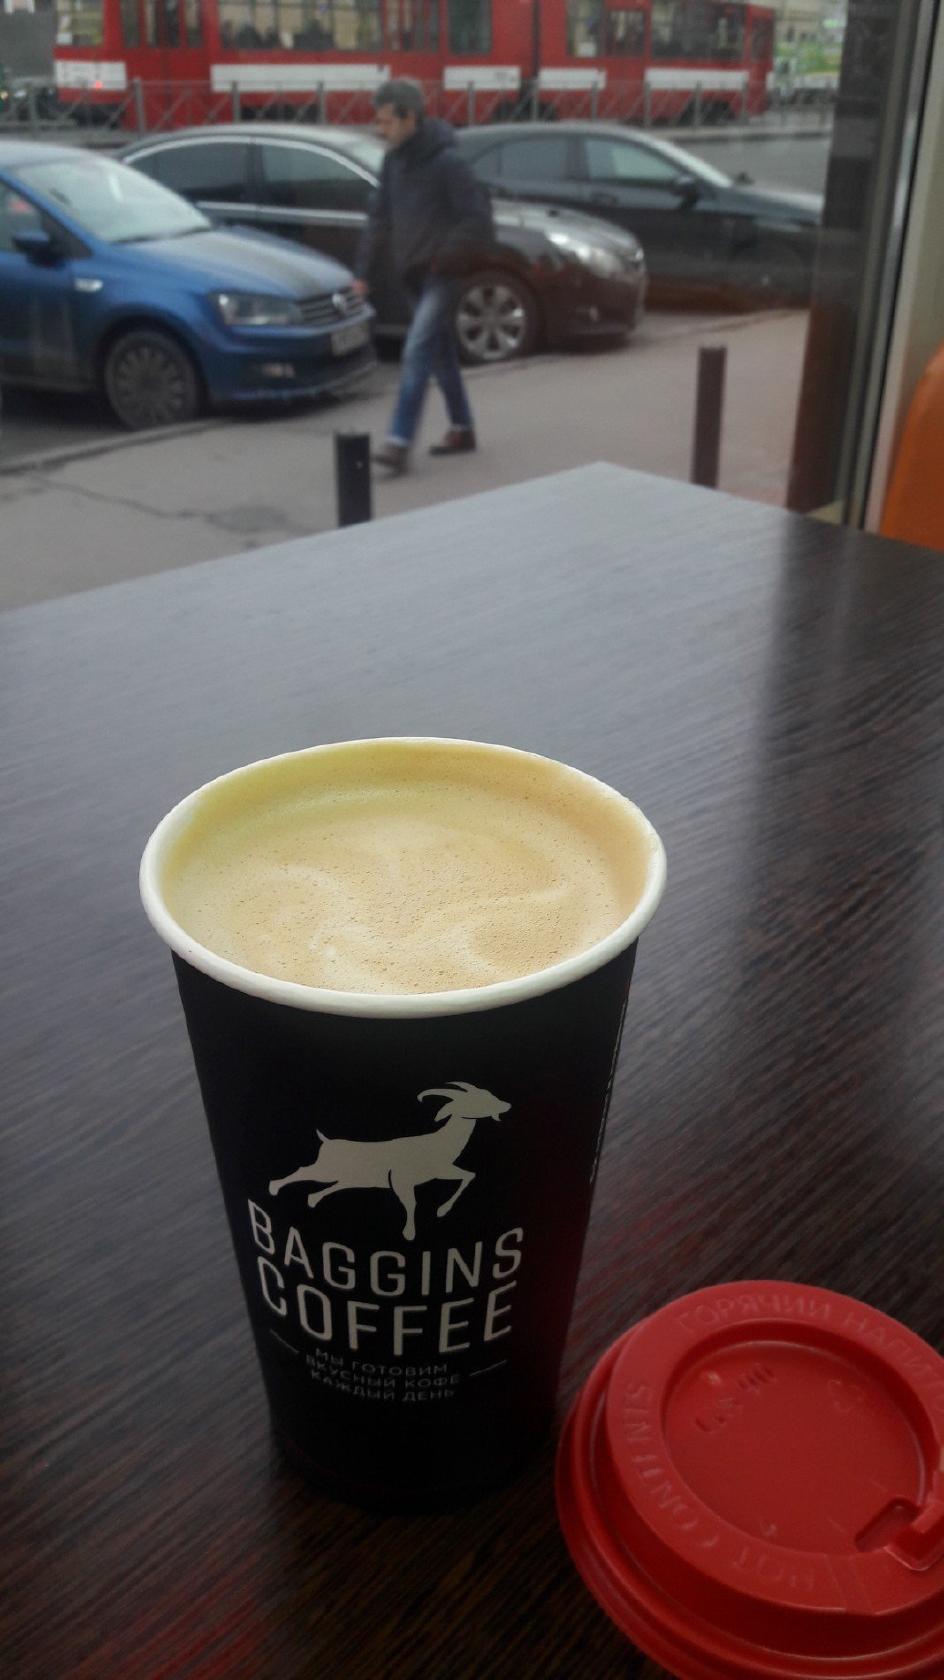 Baggins Coffee